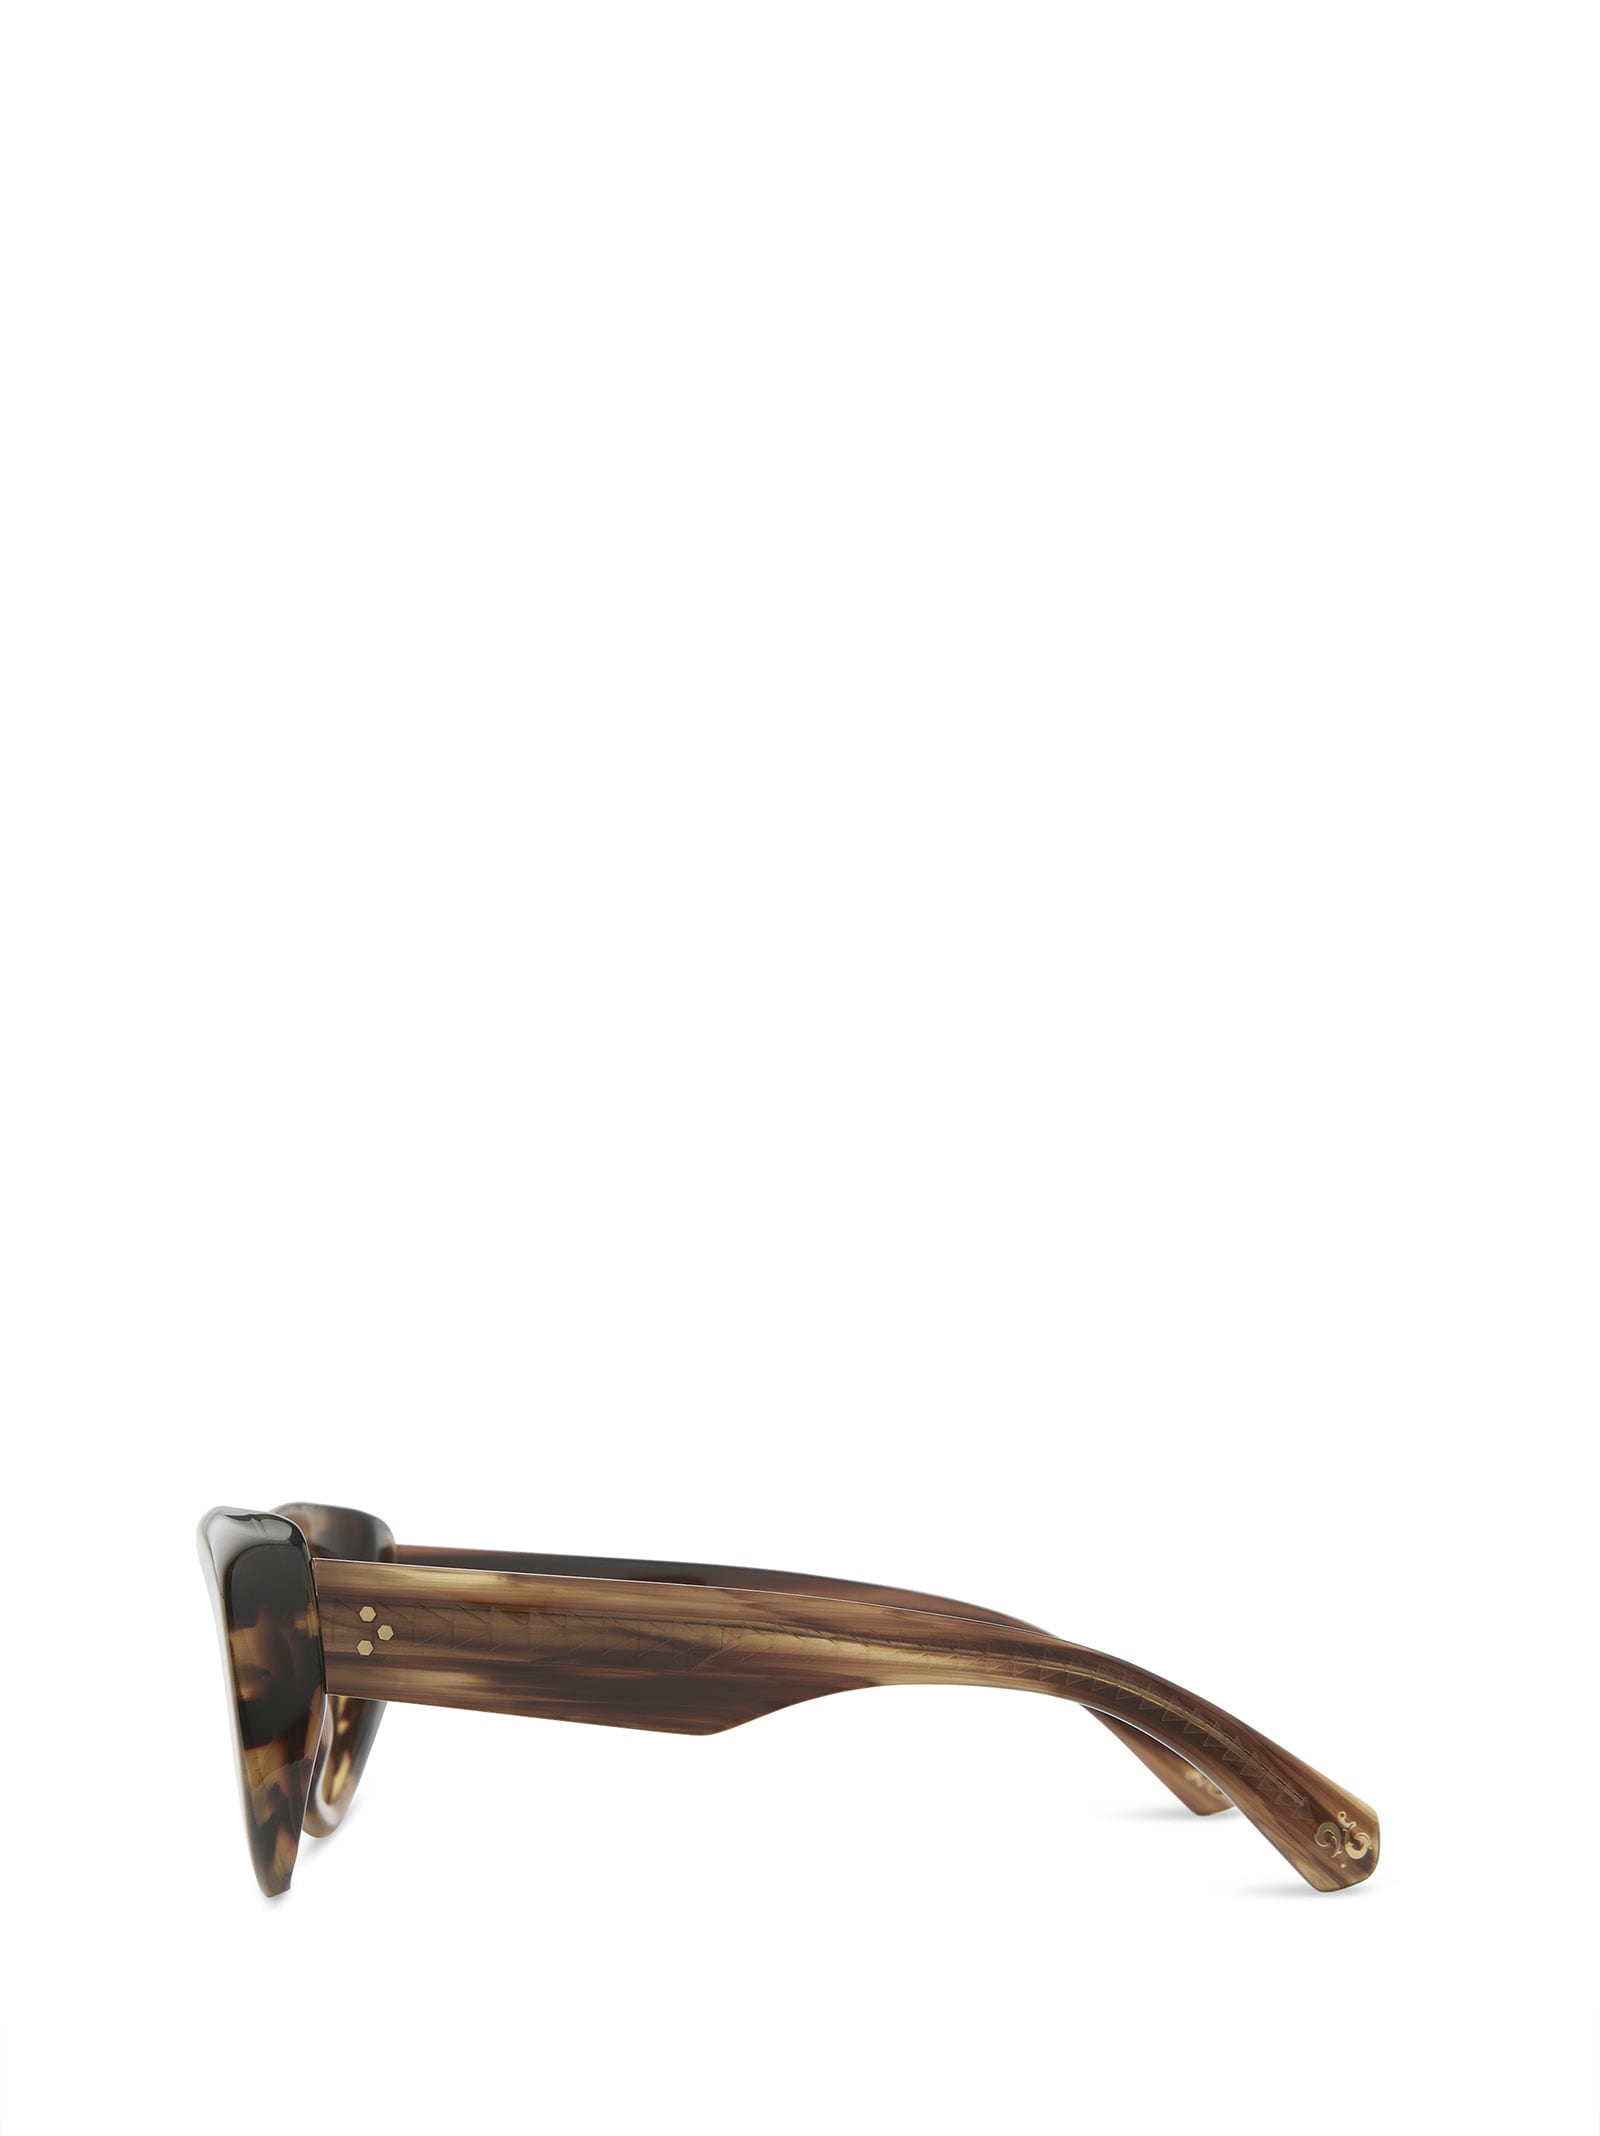 Shop Mr Leight Reveler S Koa-antique Gold Sunglasses